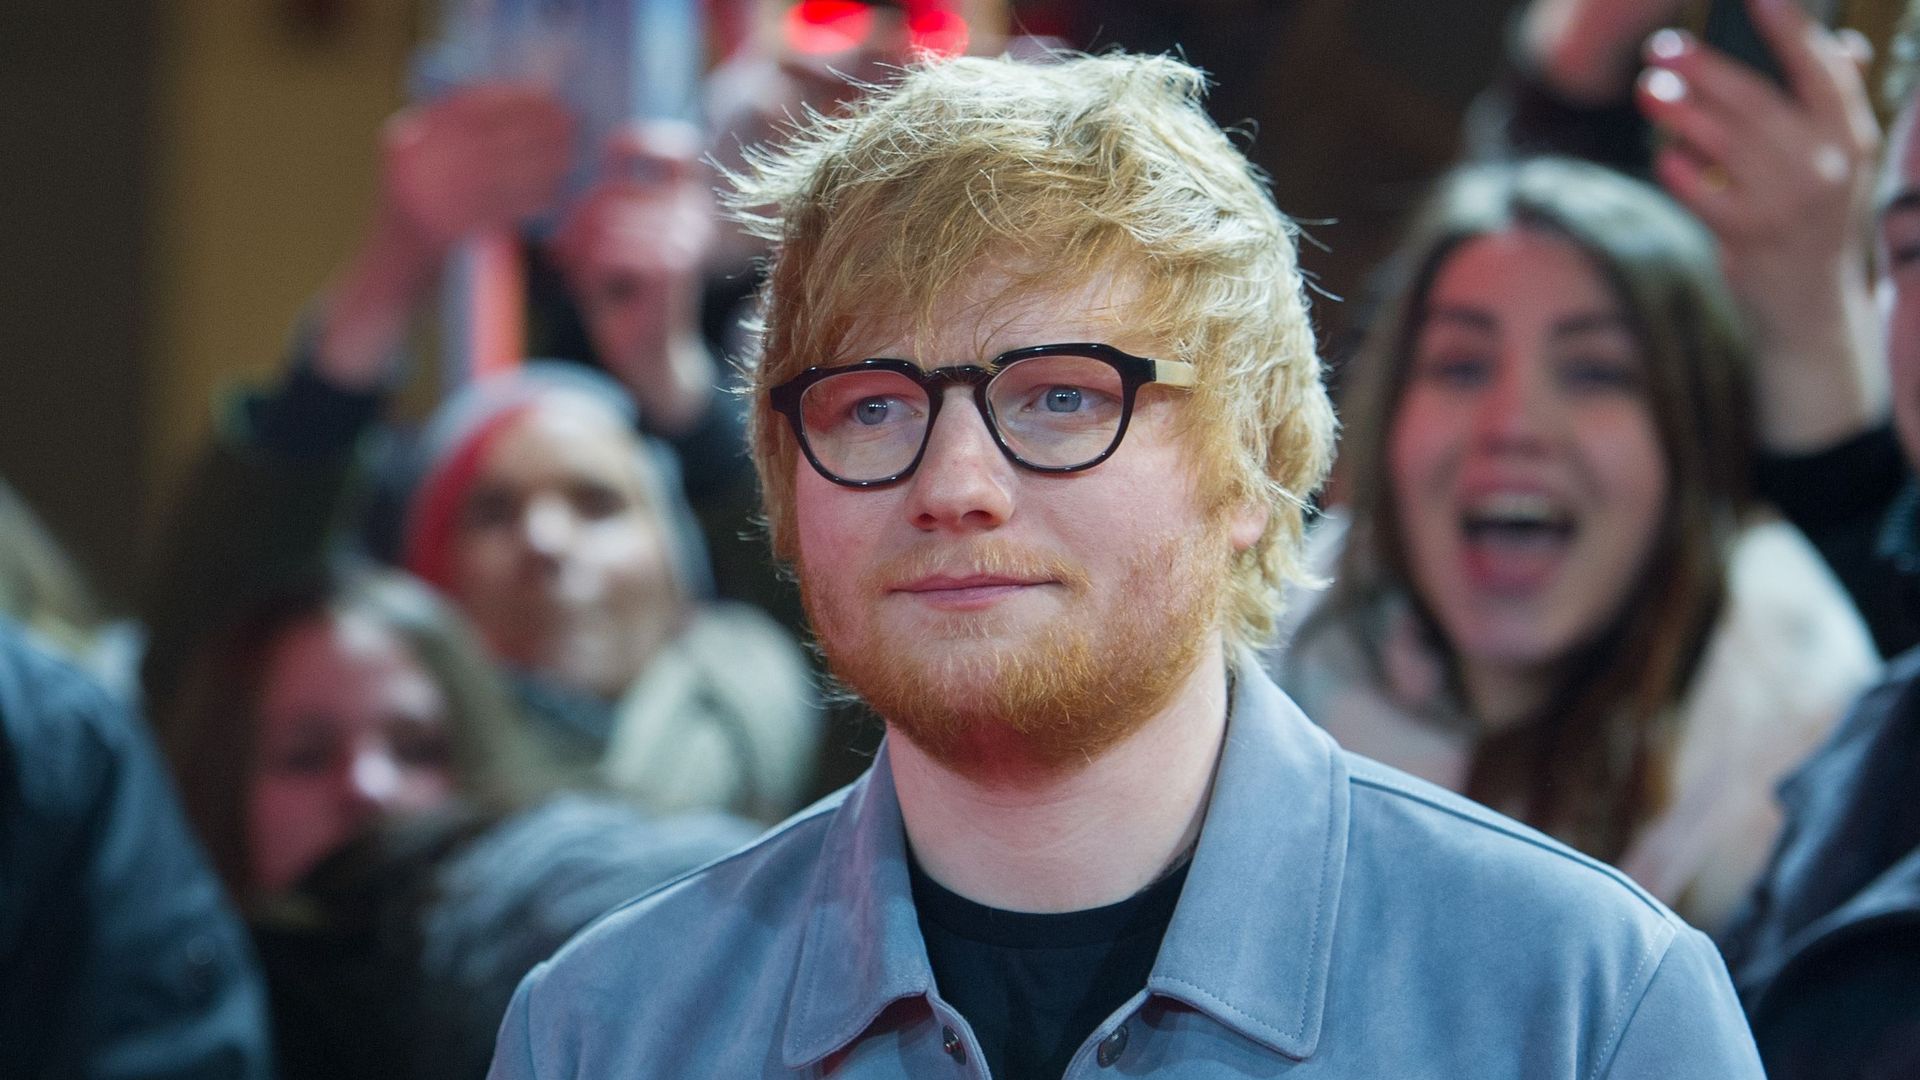 Pour sa tournée "Divide", le musicien Ed Sheeran aurait encaissé 432 millions de dollars.